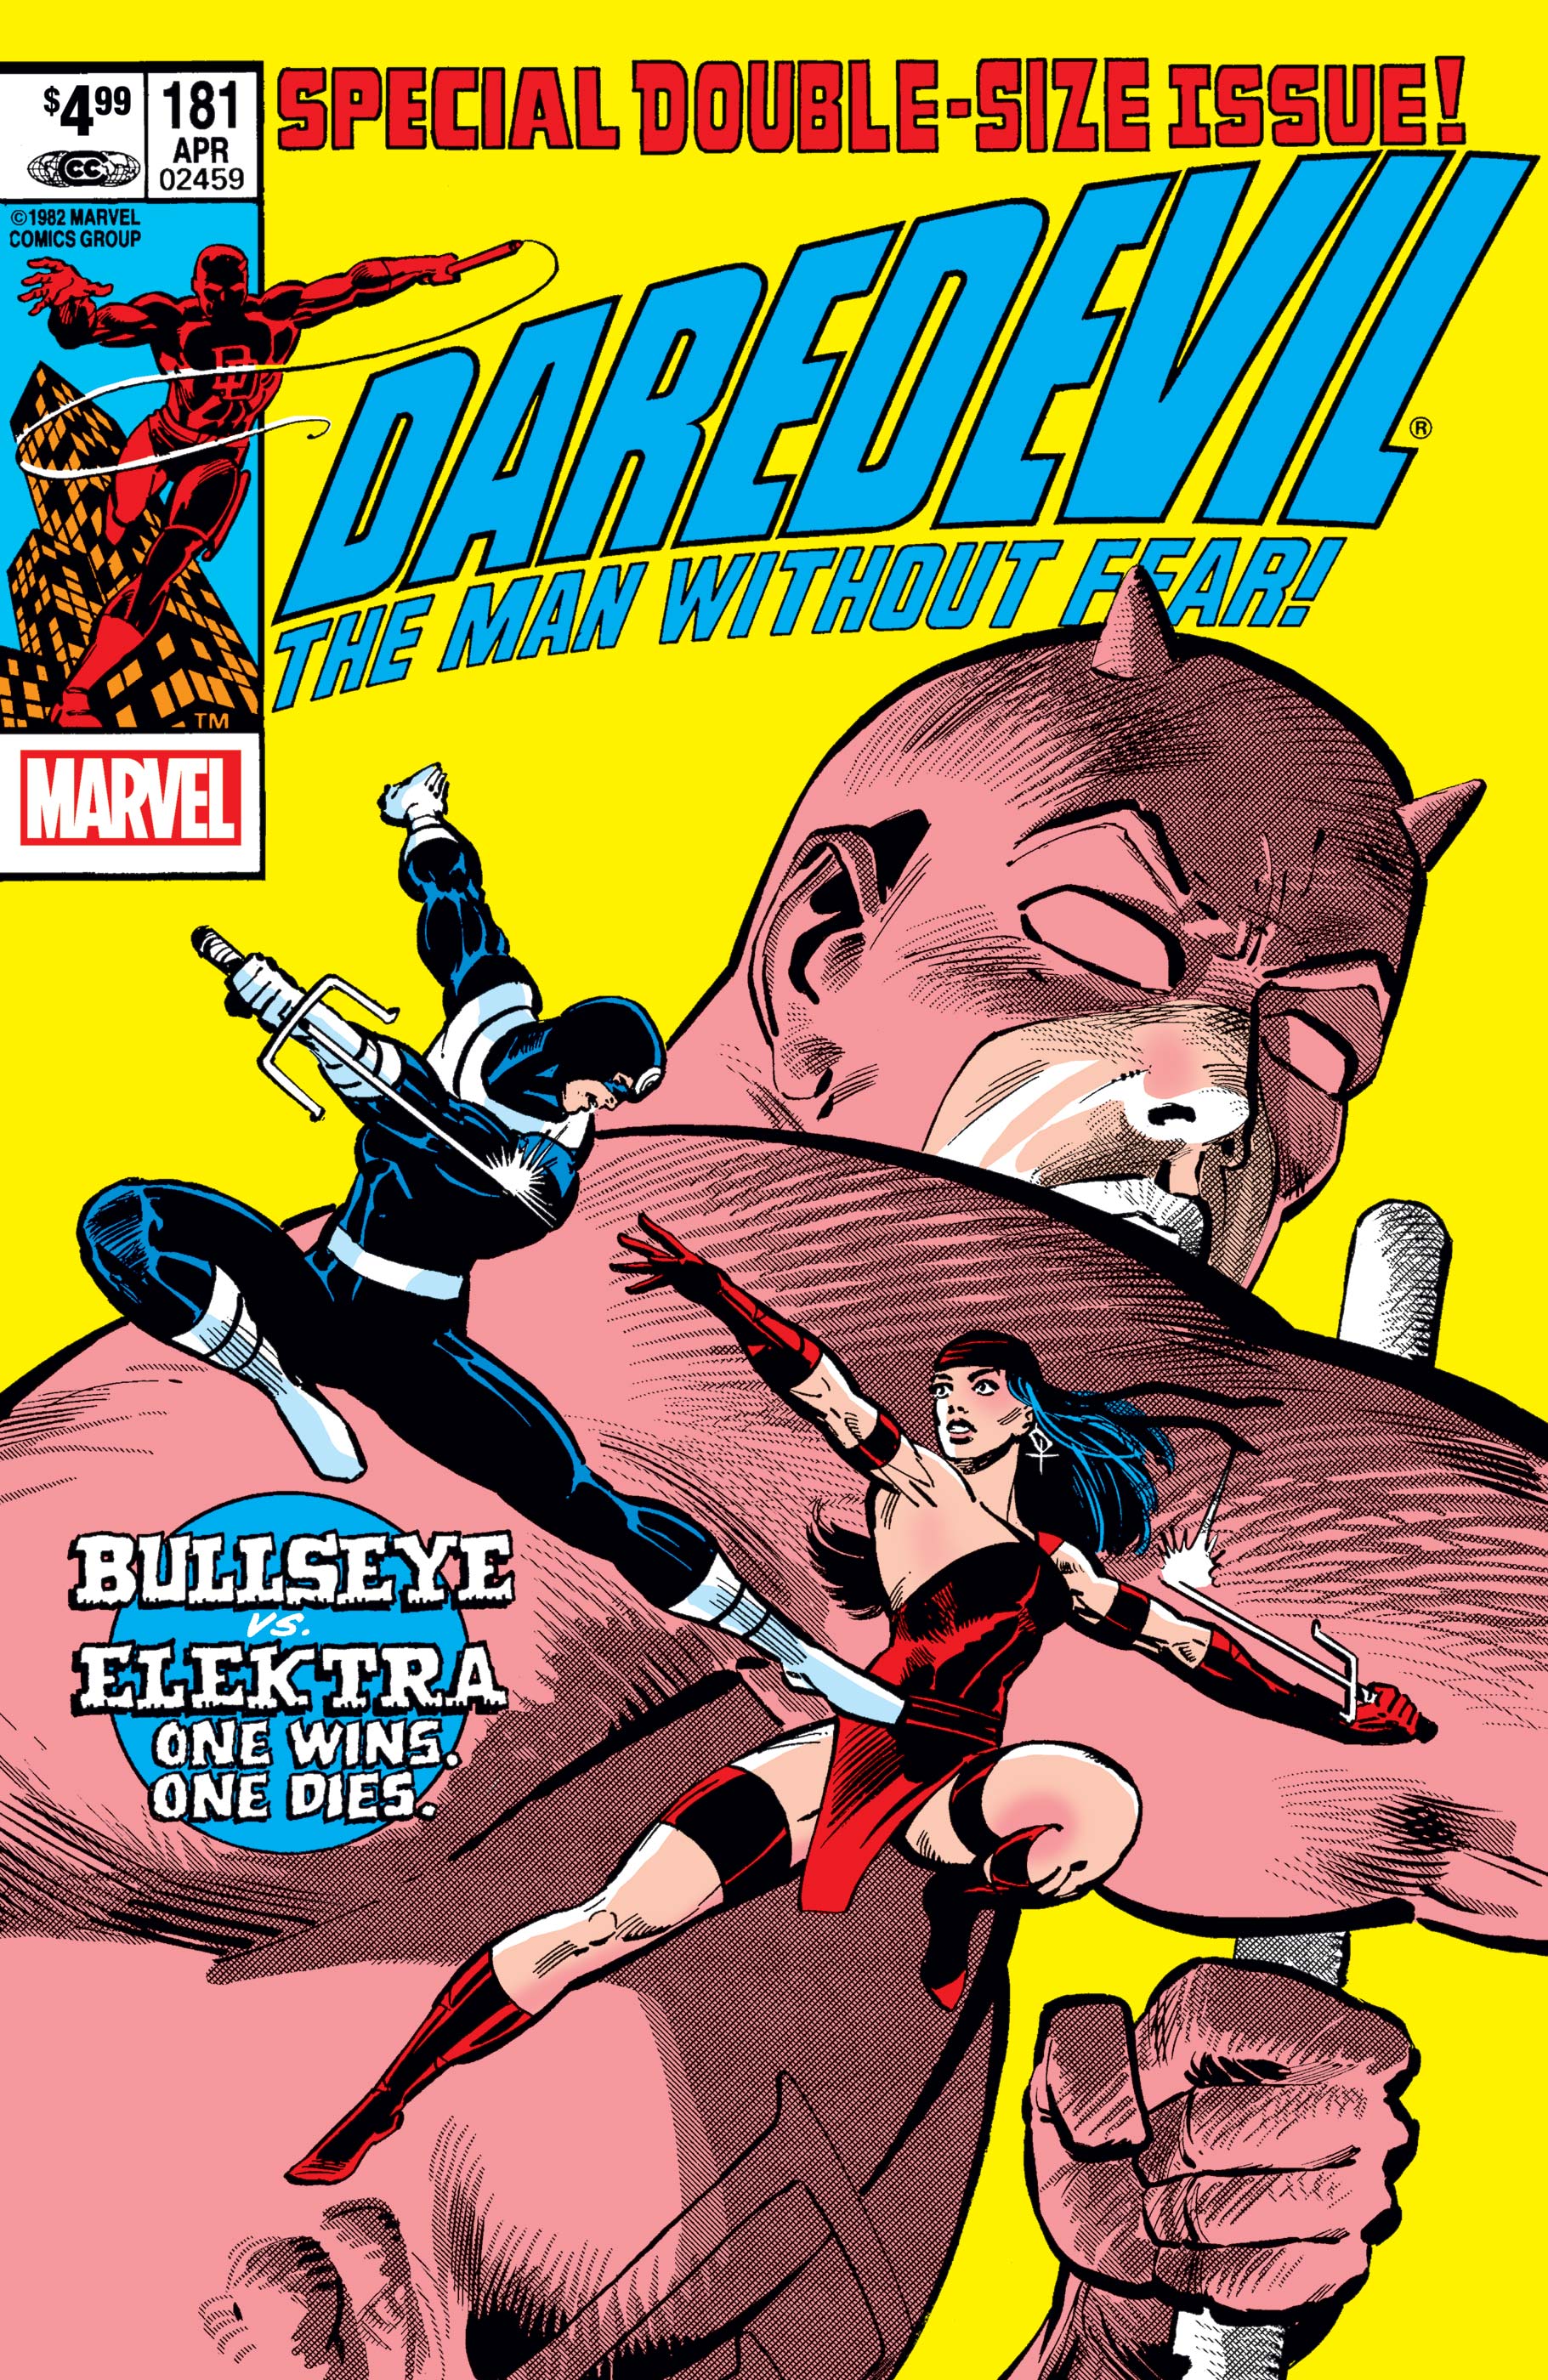 Daredevil 181 Facsimile Edition (2019) #1